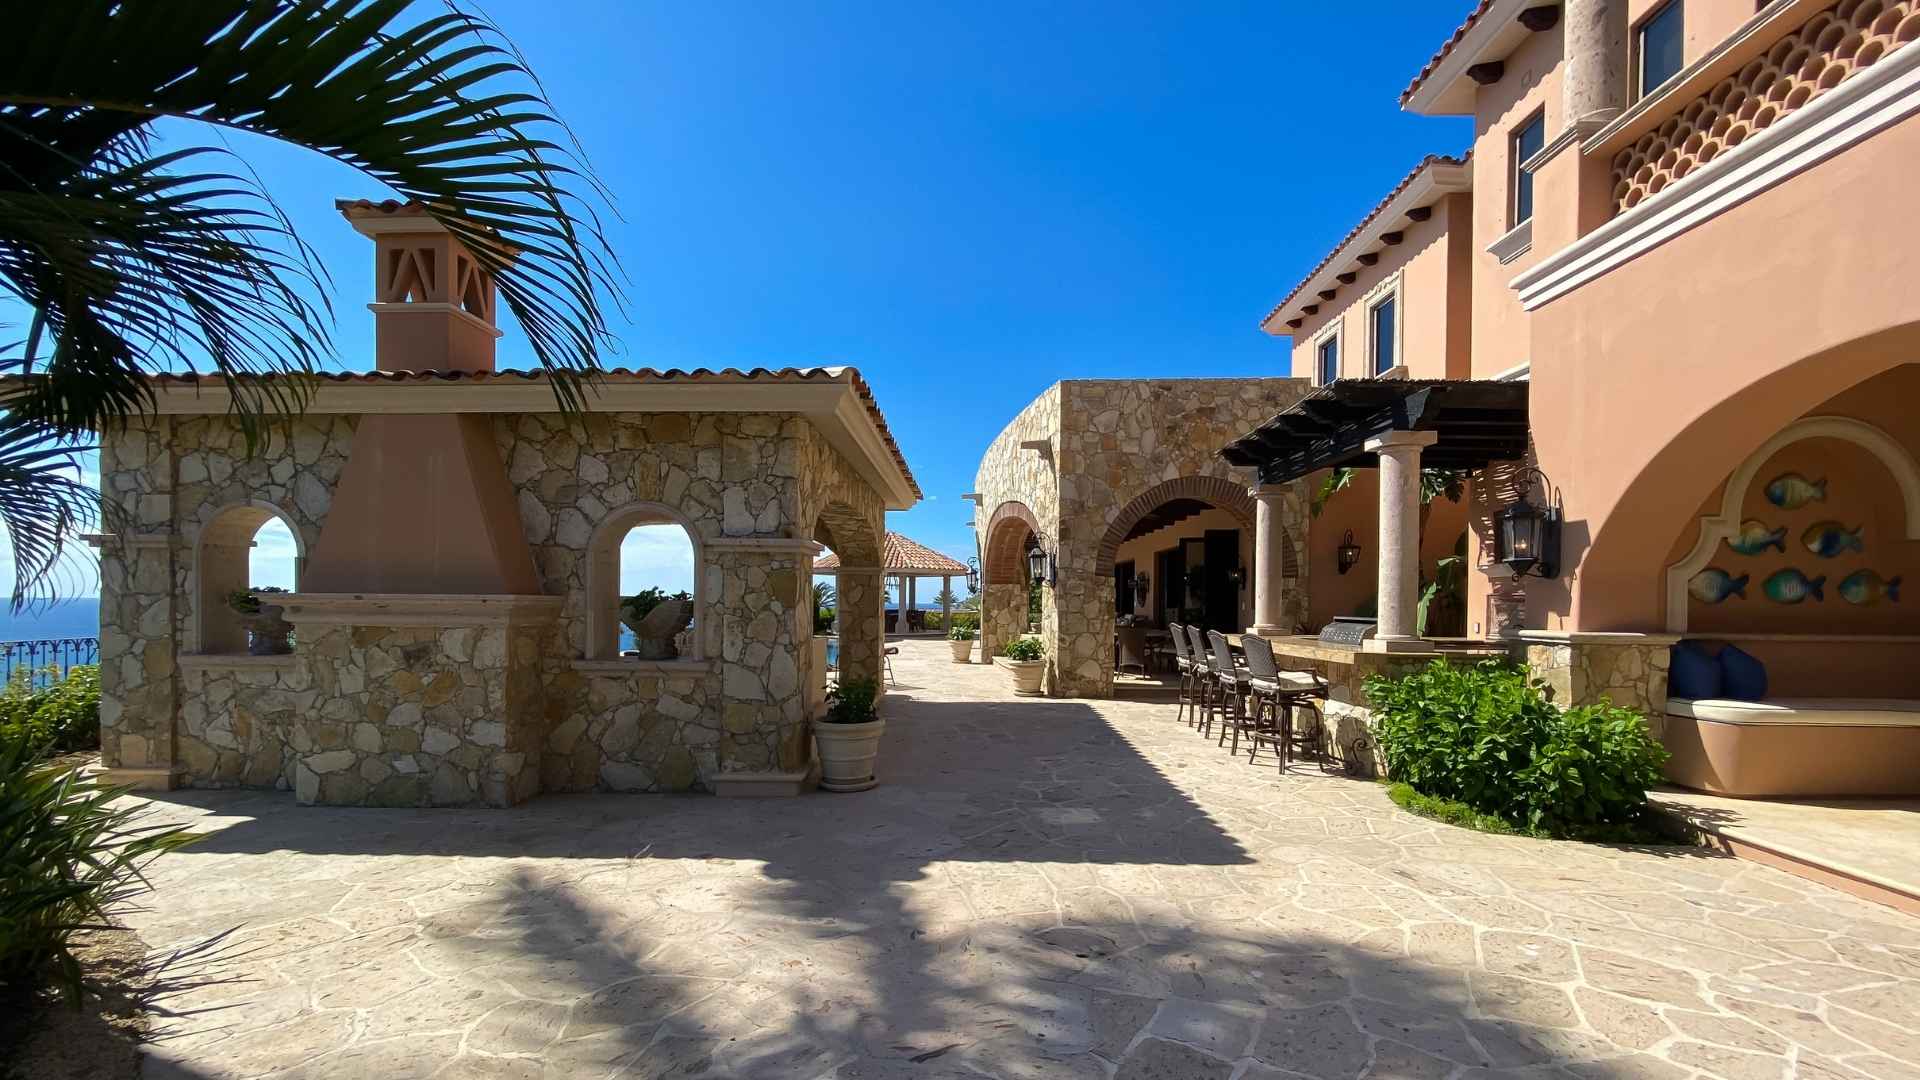 Hacienda 511 - San Jose del Cabo